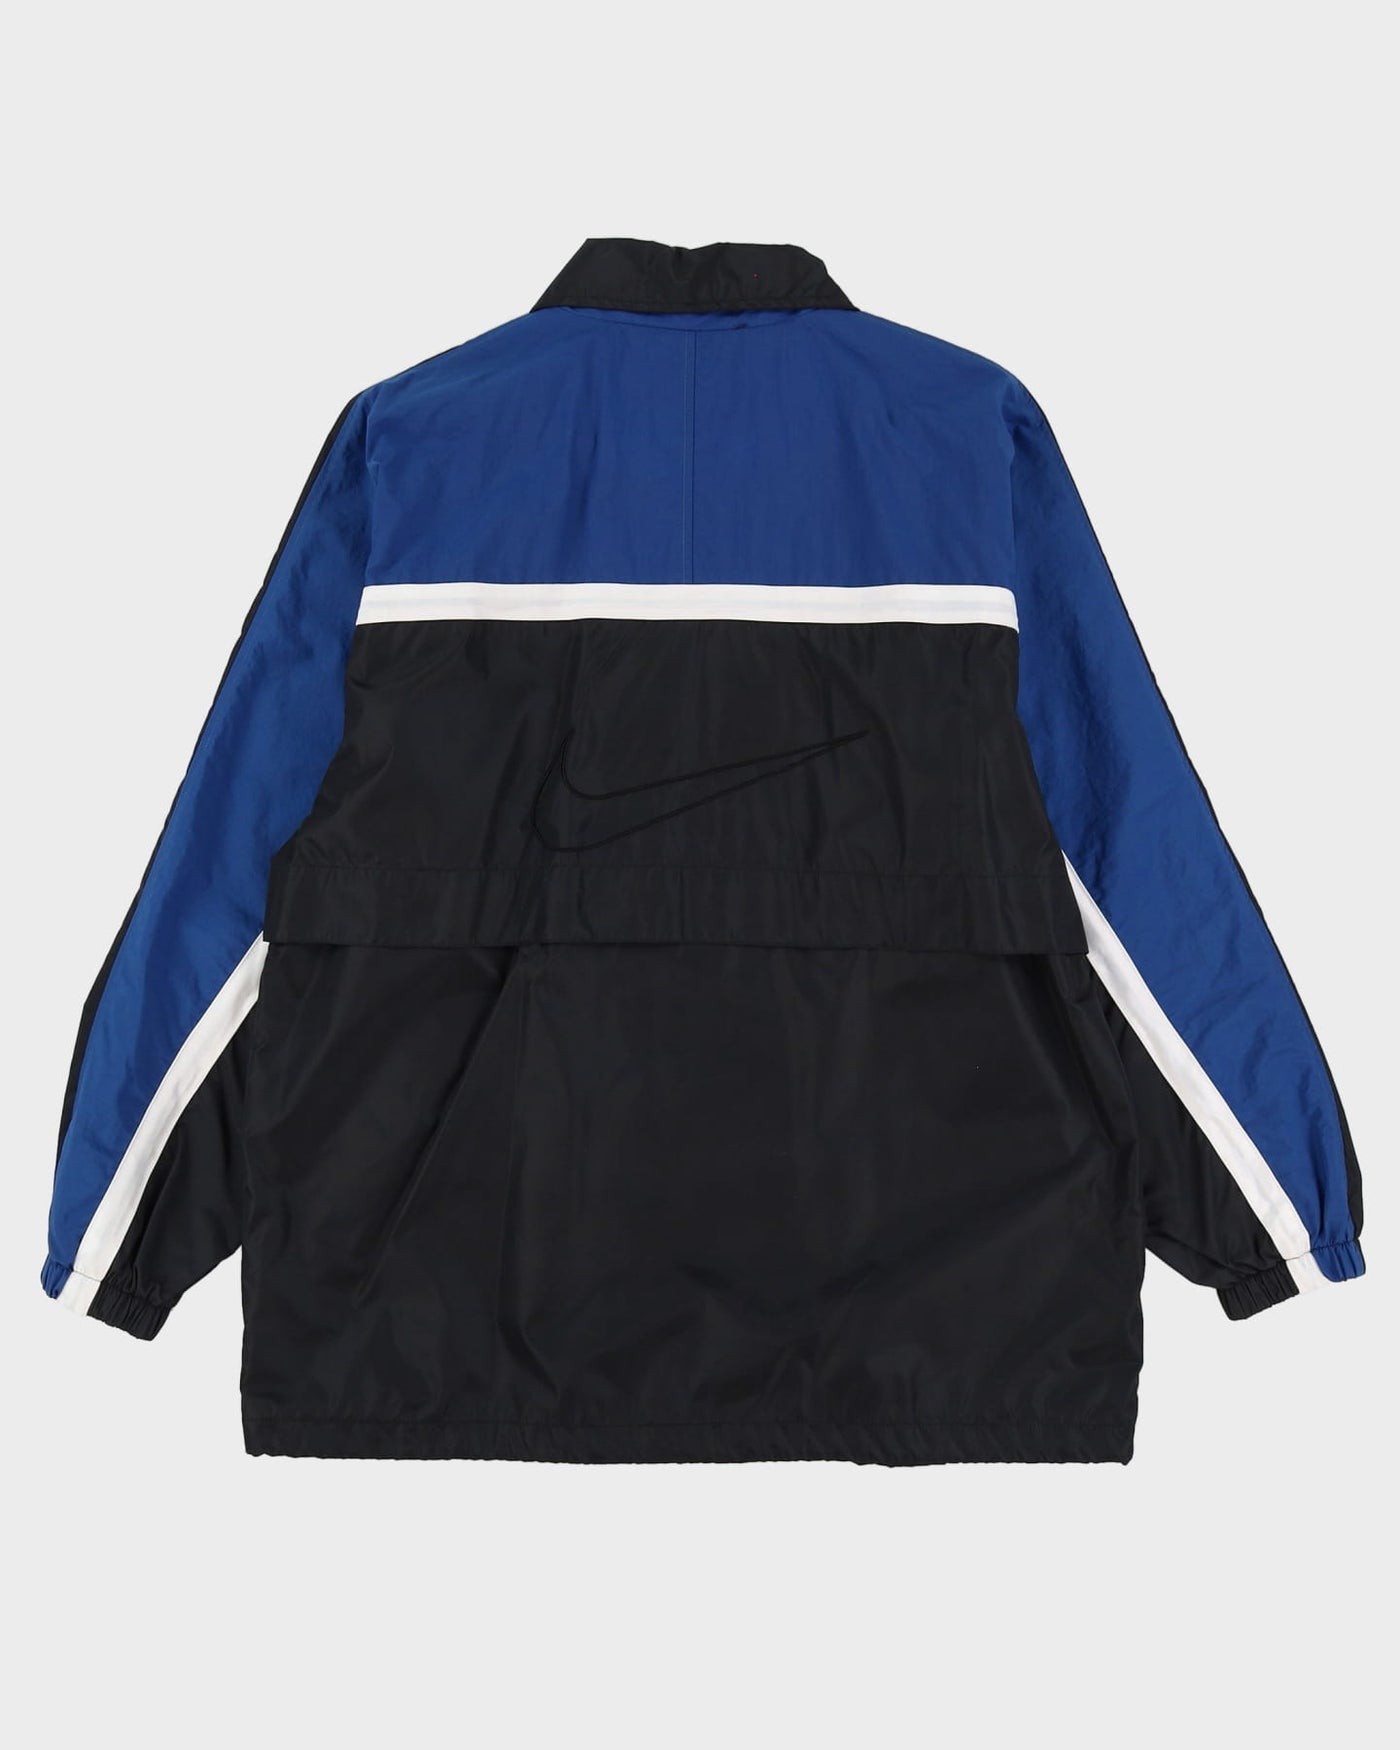 Vintage 90s Nike Black & Navy Windbreaker Jacket - M